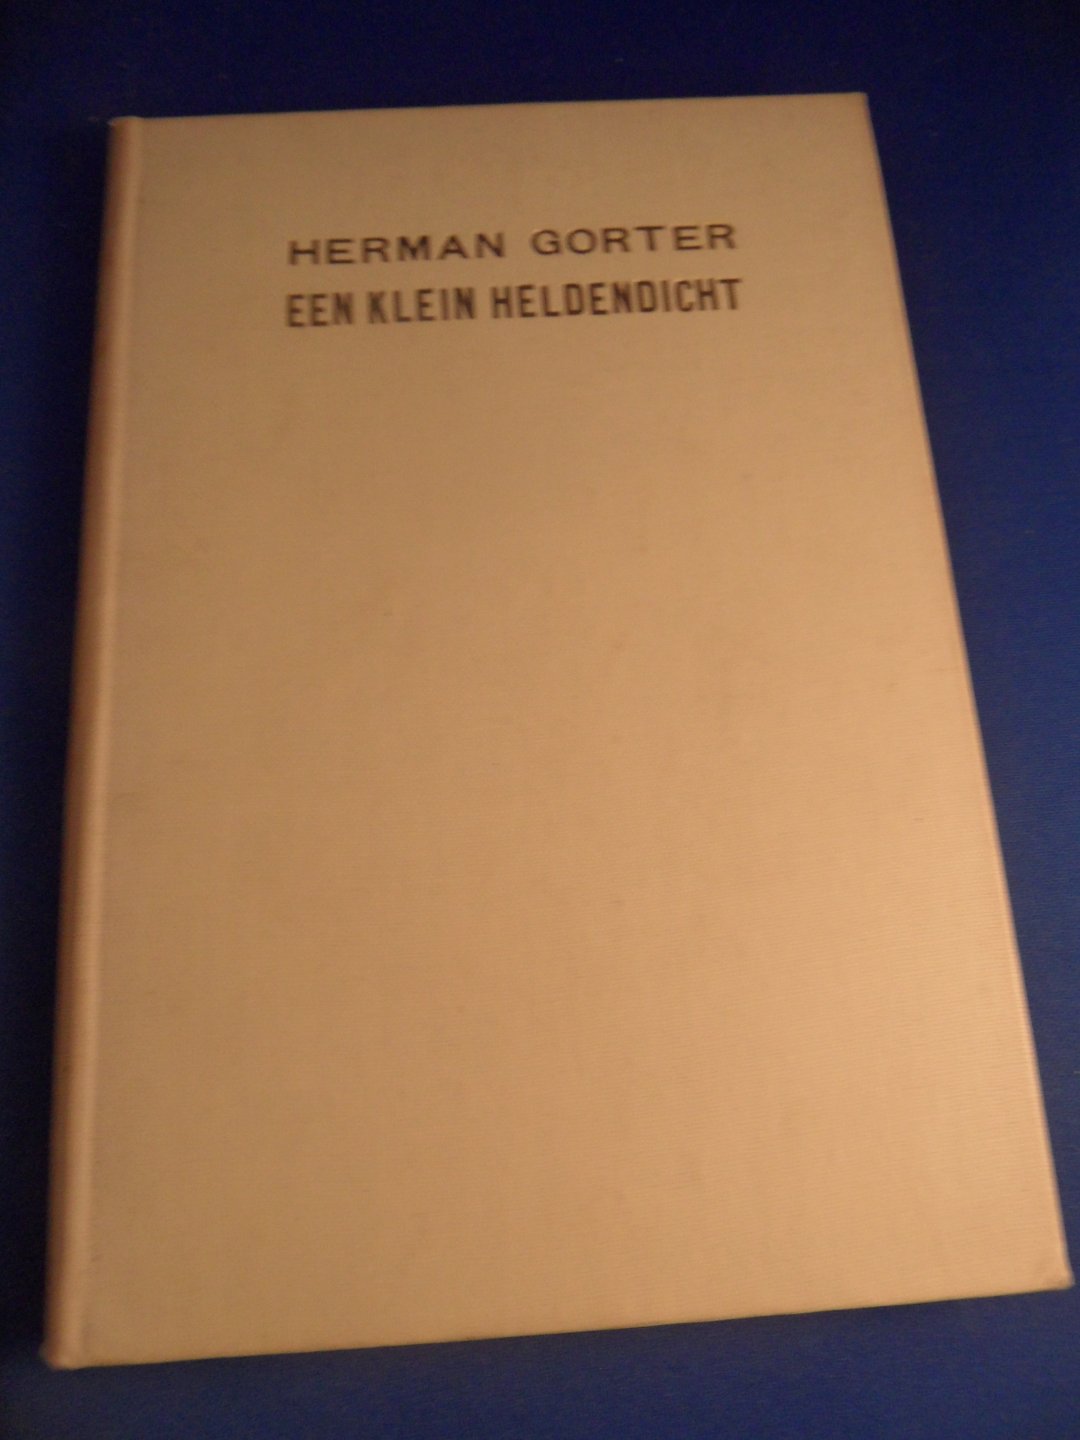 Gorter, Herman - Een klein heldendicht